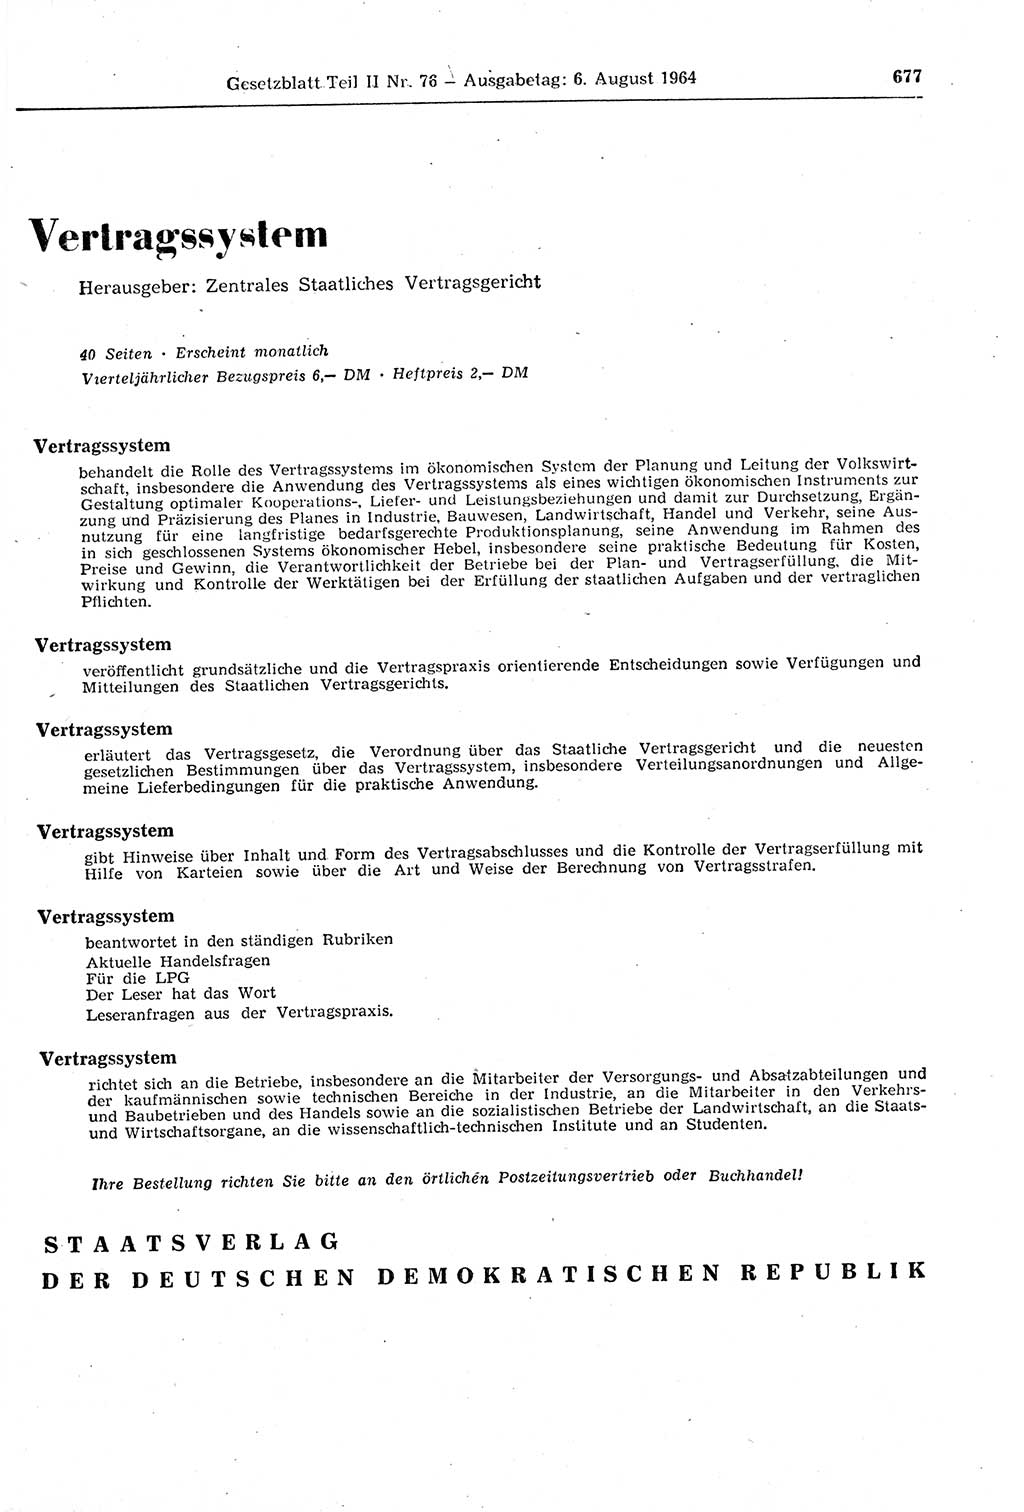 Gesetzblatt (GBl.) der Deutschen Demokratischen Republik (DDR) Teil ⅠⅠ 1964, Seite 677 (GBl. DDR ⅠⅠ 1964, S. 677)